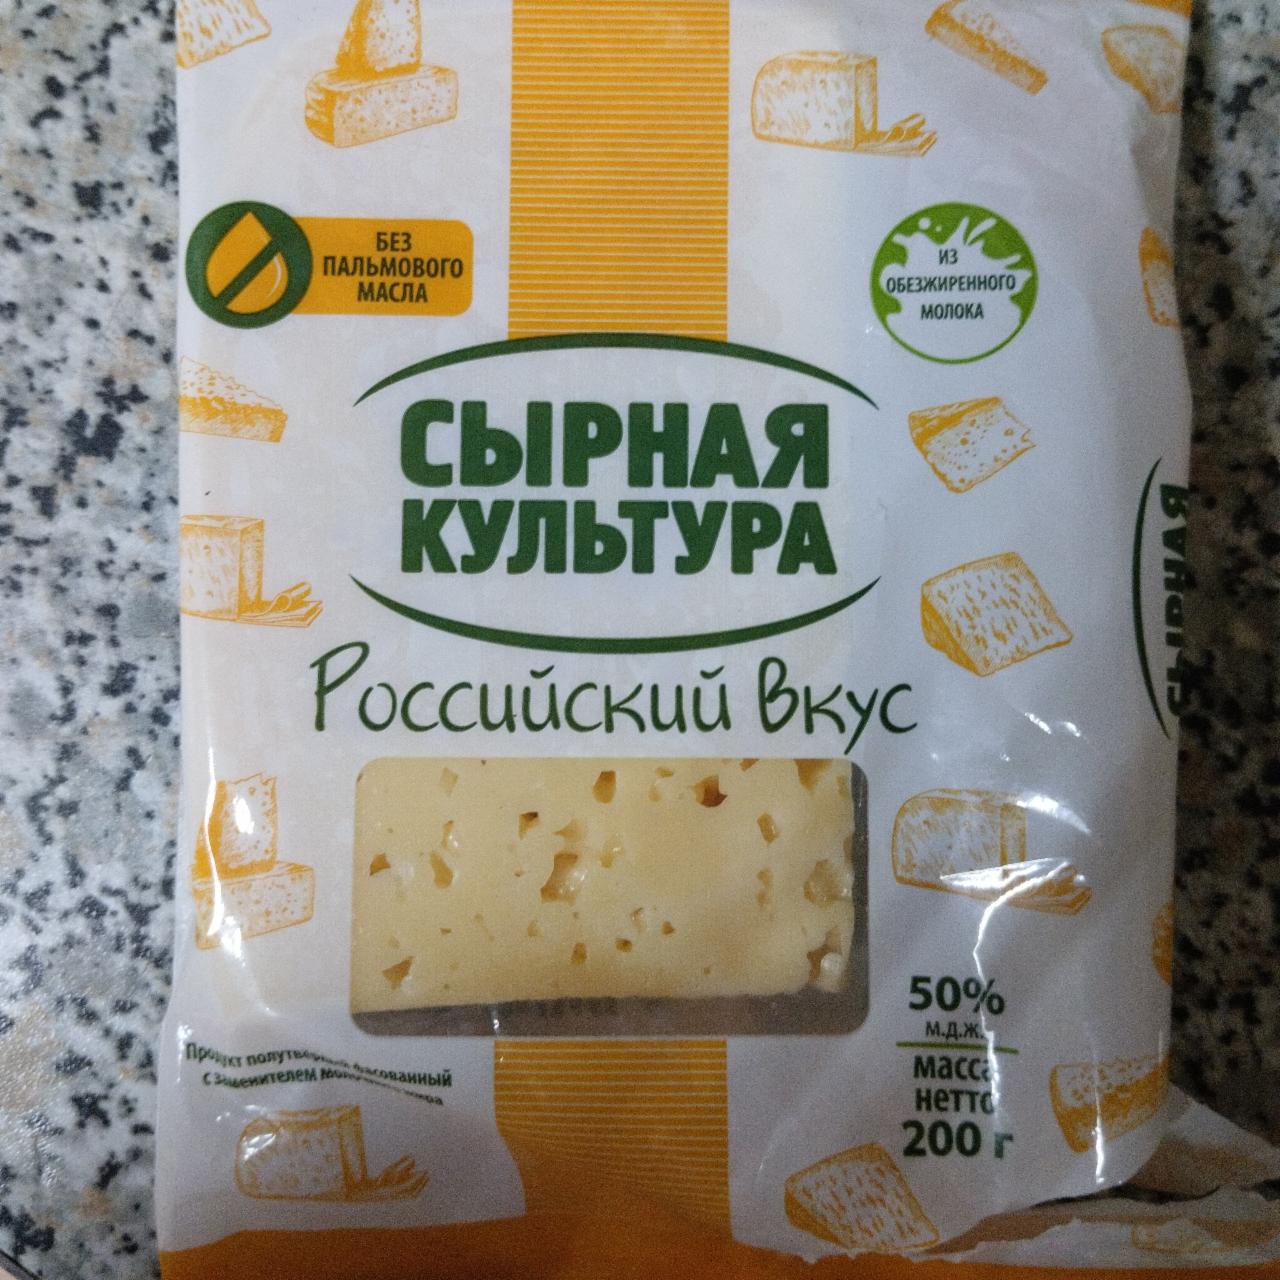 Фото - Продукт полутвердый Российский 50% Сырная культура